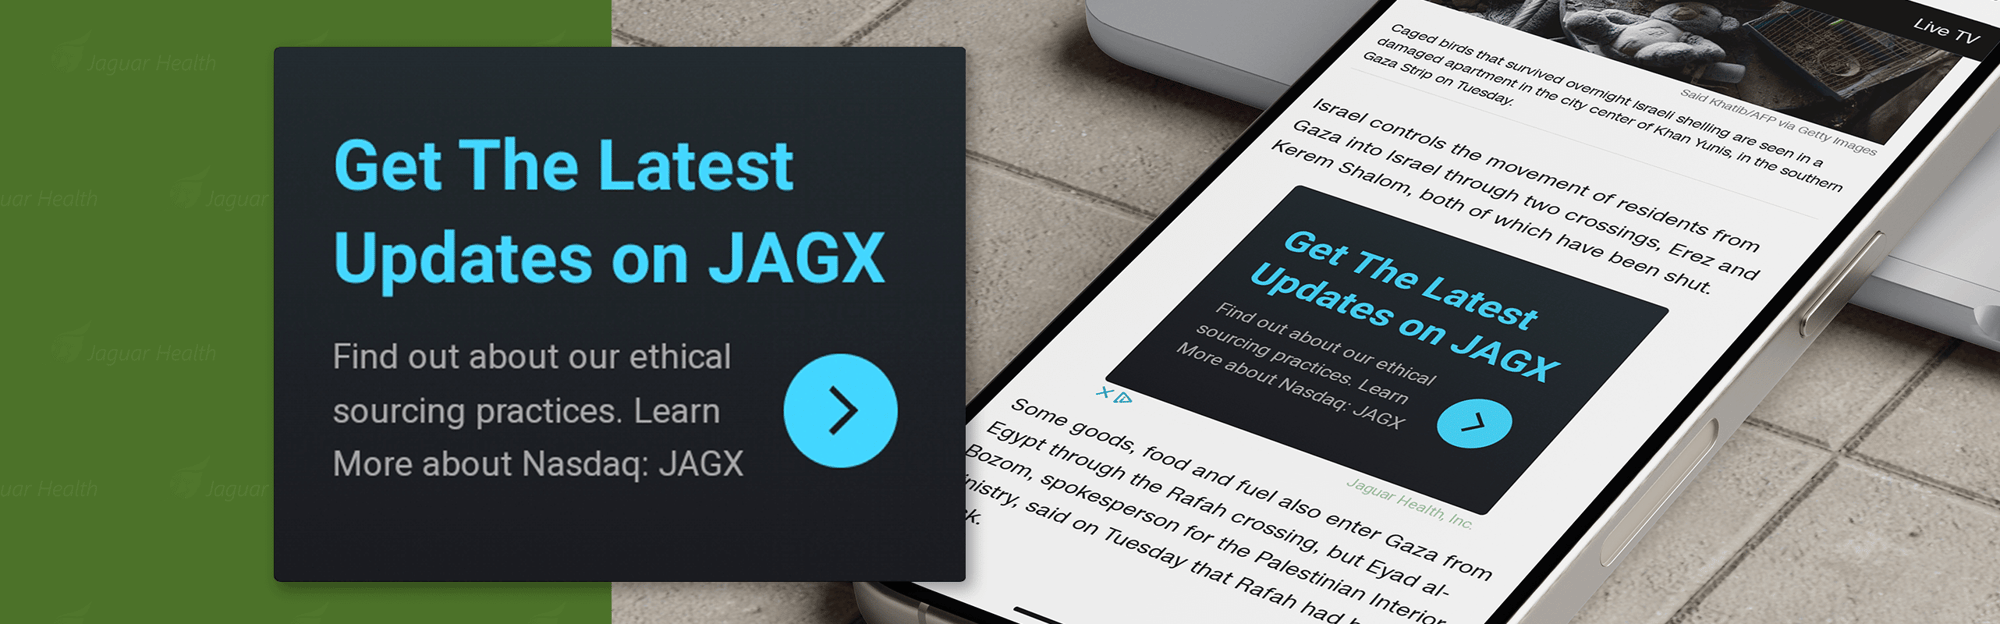 Jaguar-Mockup-Desktop-Google-Display-1